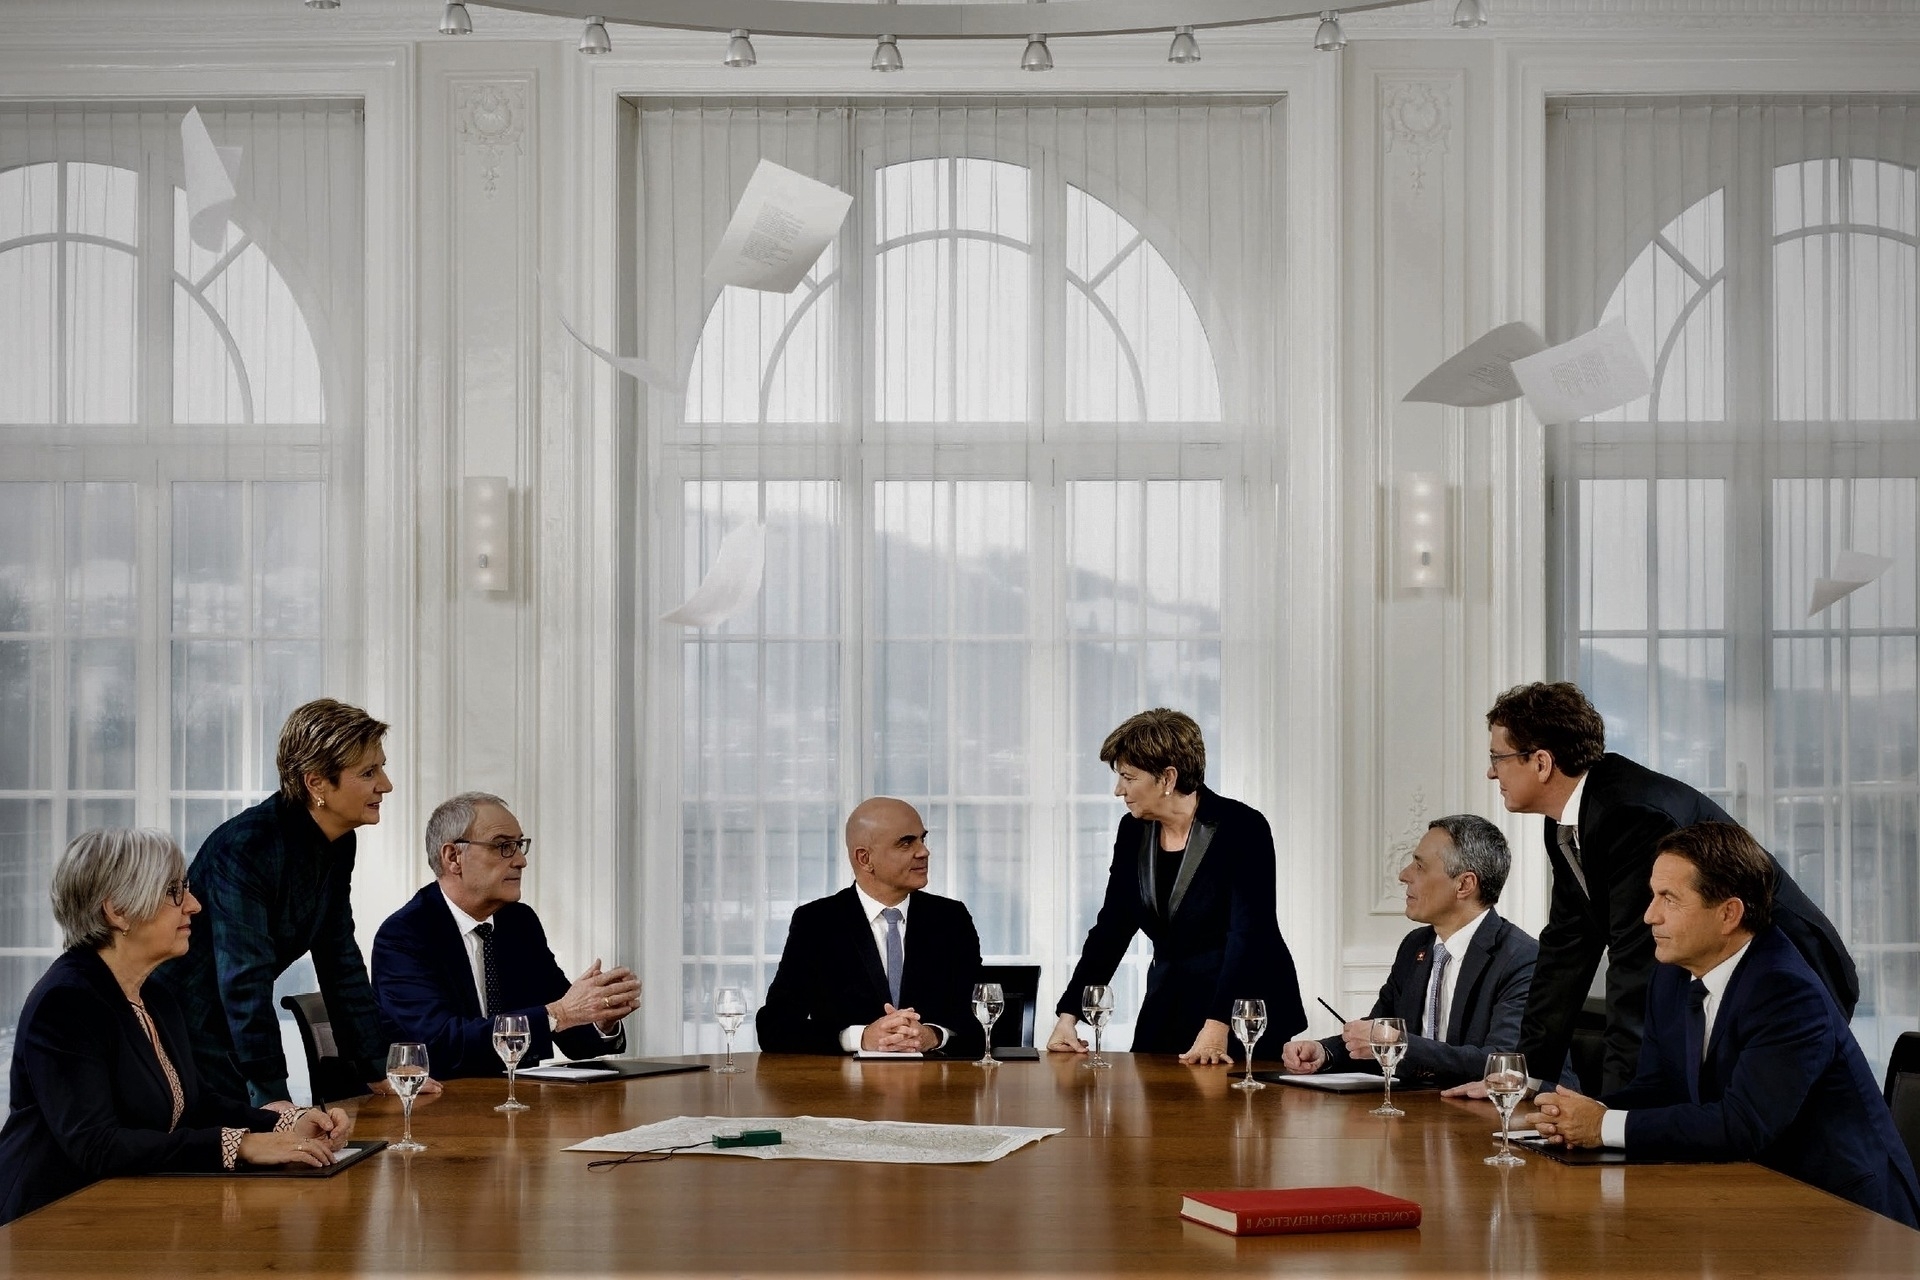 瑞士：2023 年瑞士聯邦聯邦委員會反轉版官方照片：從左到右為聯邦委員 Elisabeth Baume-Schndeider、Karin Keller-Sutter、Guy Parmelin、Alain Berset（主席）、Viola Amherd（副主席）、Ignazio Cassis、Albert Rösti 和聯邦總理 Walter Thurnherr